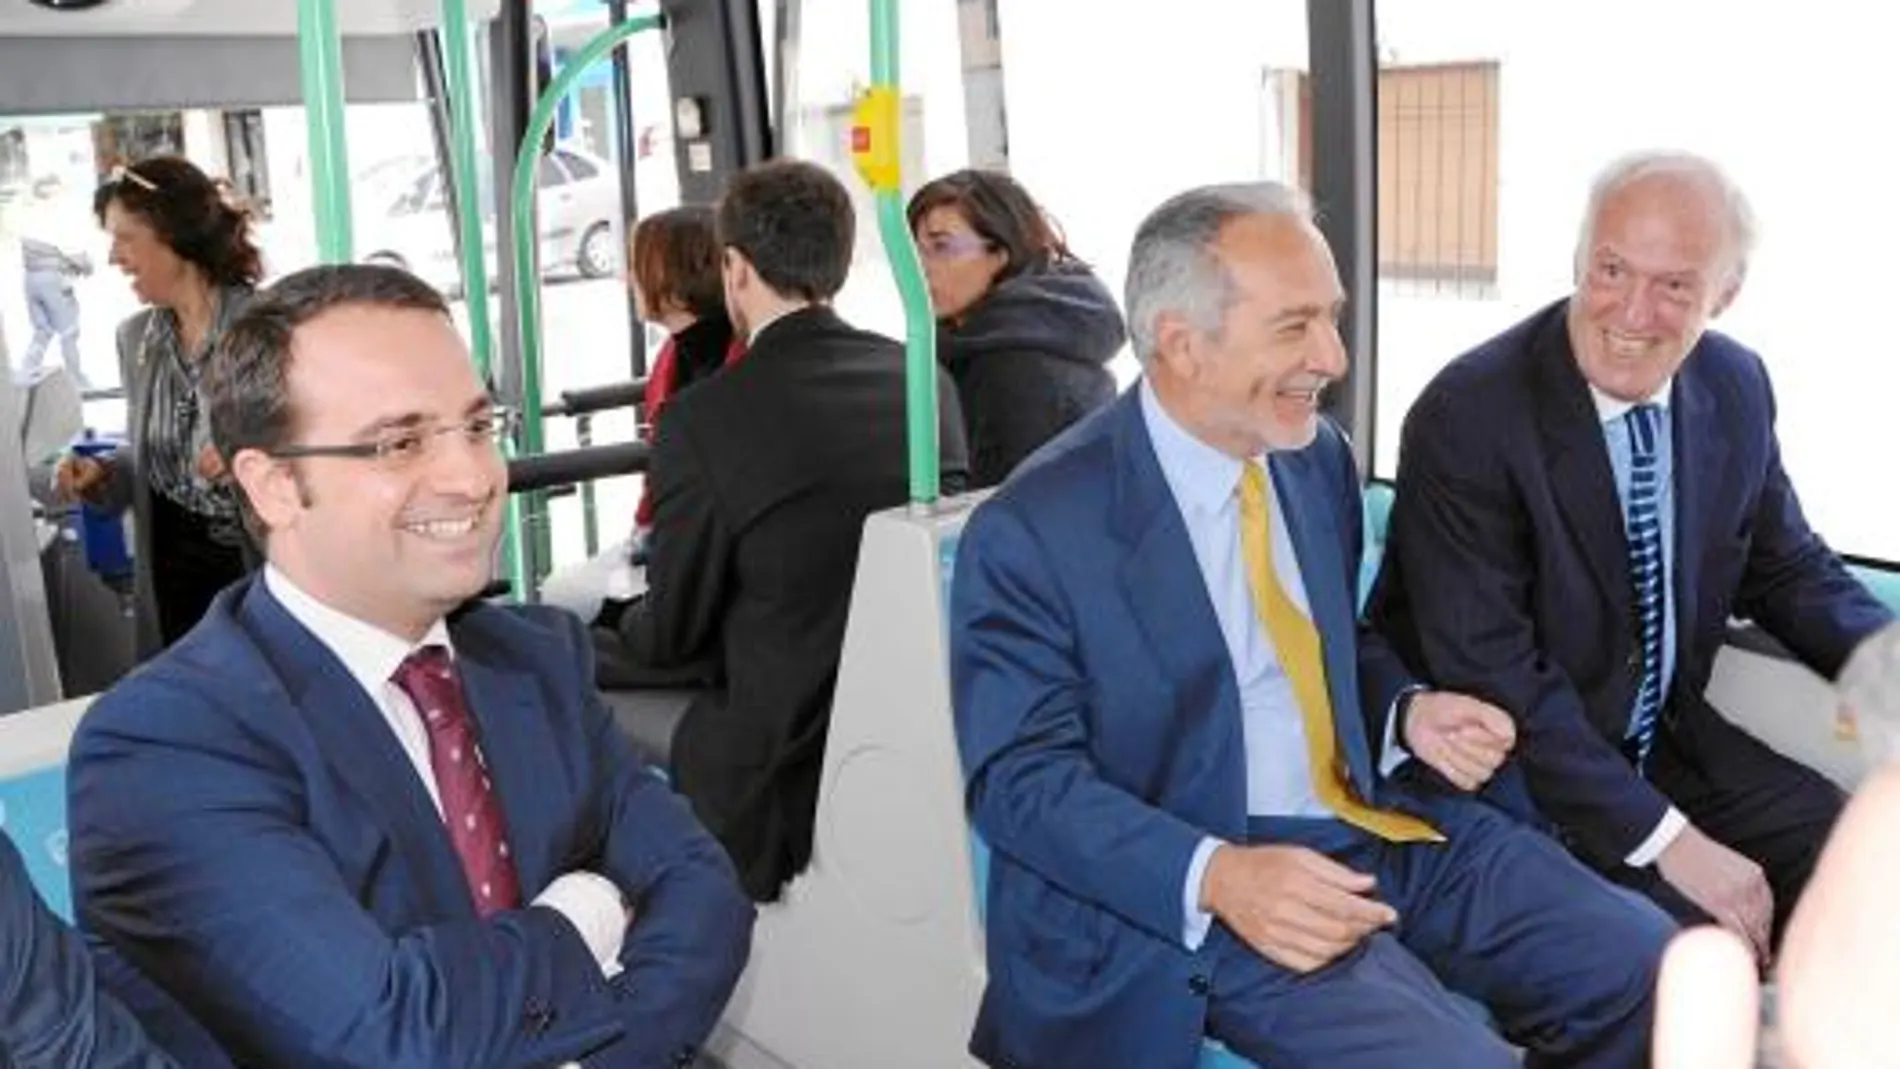 El consejero de Transportes, José Ignacio Echevarría, y el alcalde de Móstoles, Esteban Parro, firmaron un convenio para ampliar las rutas